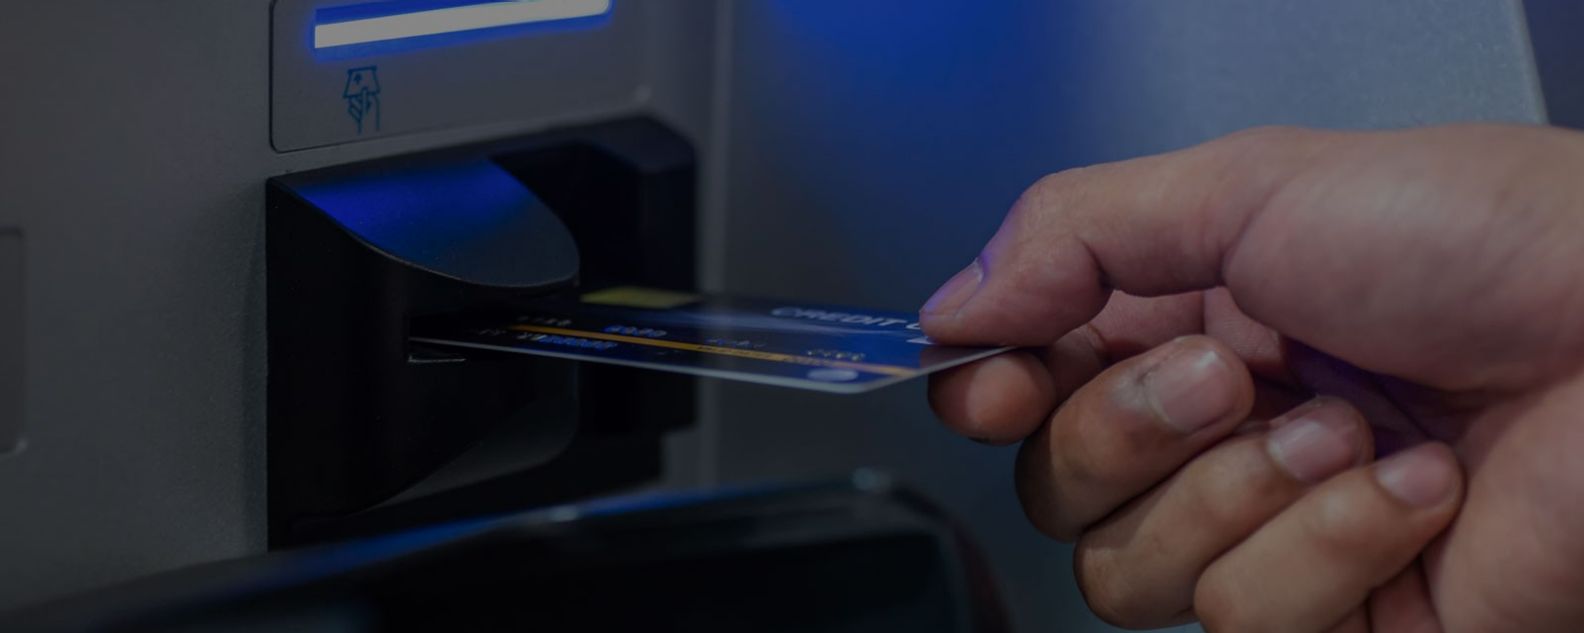 Hombre insertando una tarjeta de débito en una máquina ATM